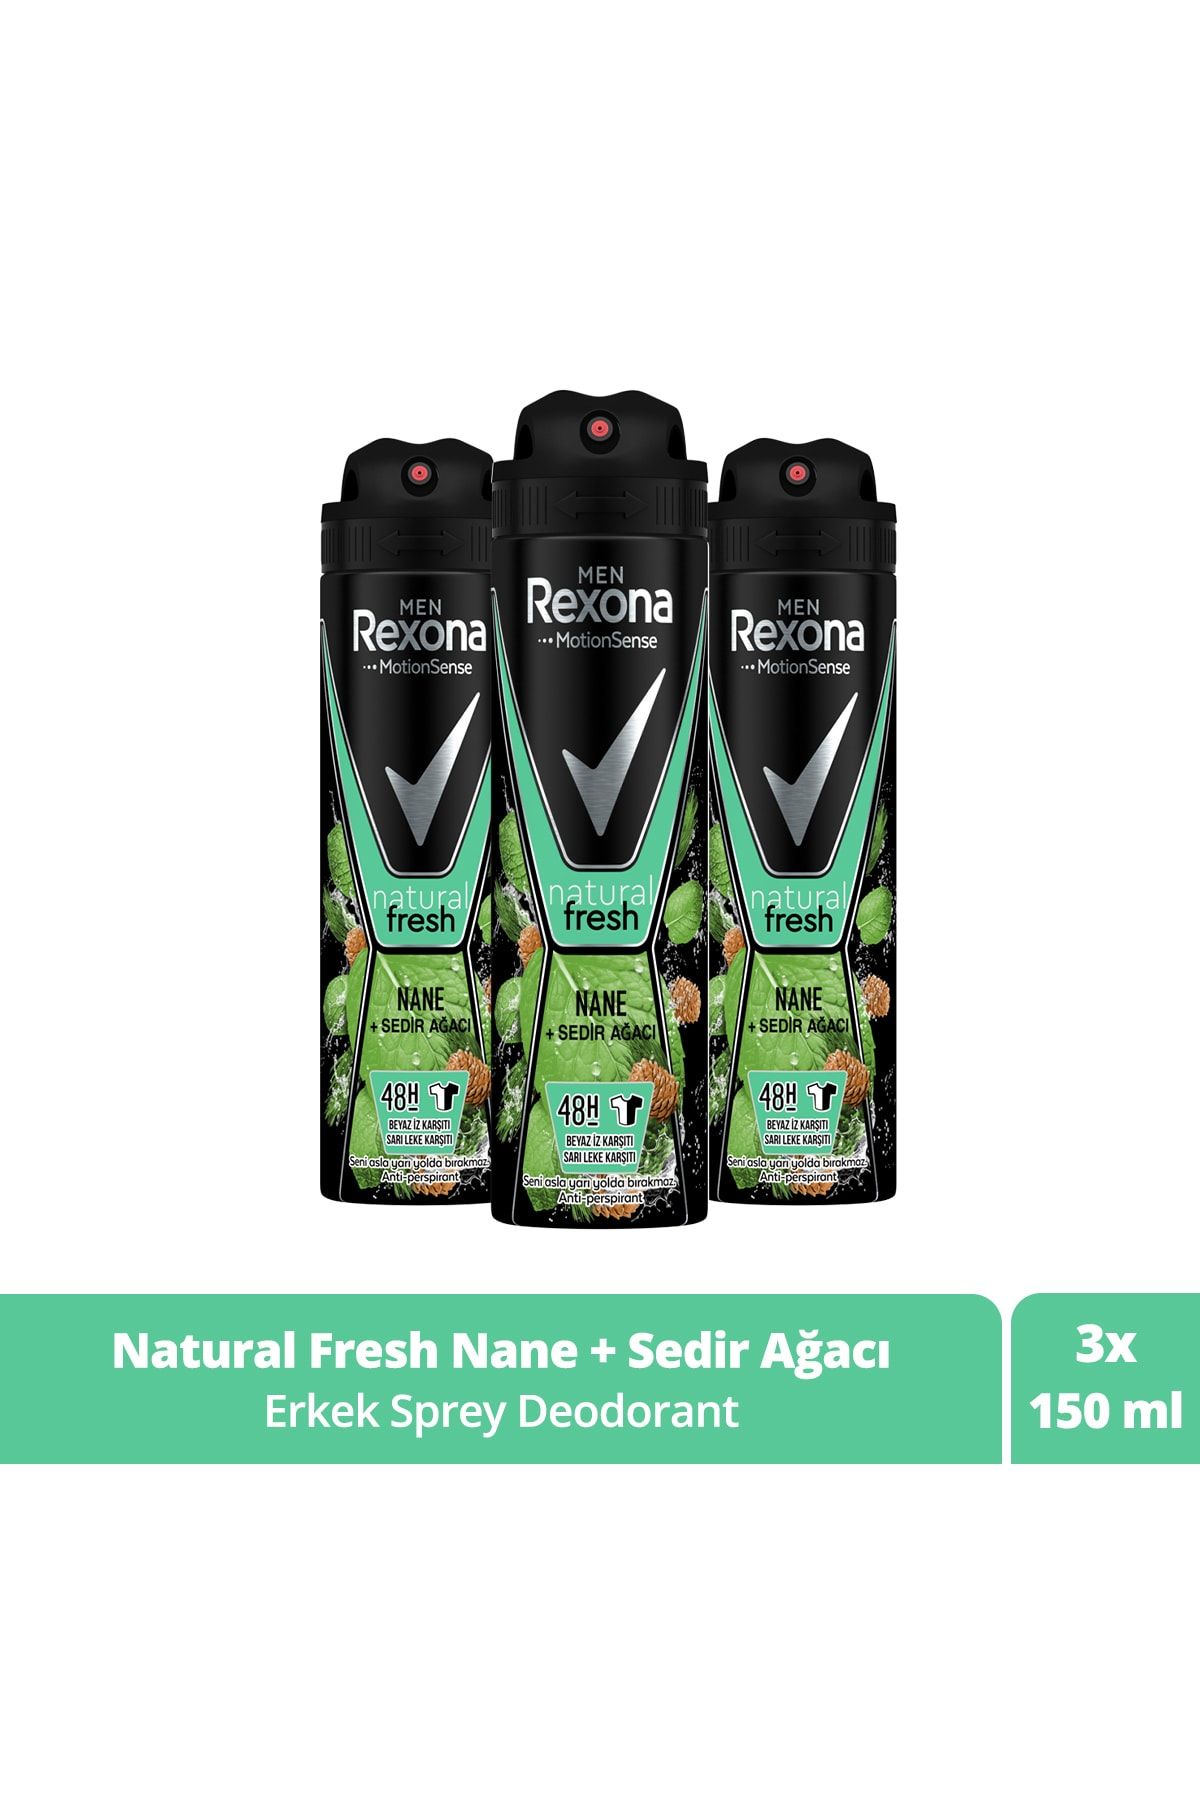 Rexona Men Erkek Sprey Deodorant Natural Fresh Nane ve Sedir Ağacı 150 ml x3 Adet